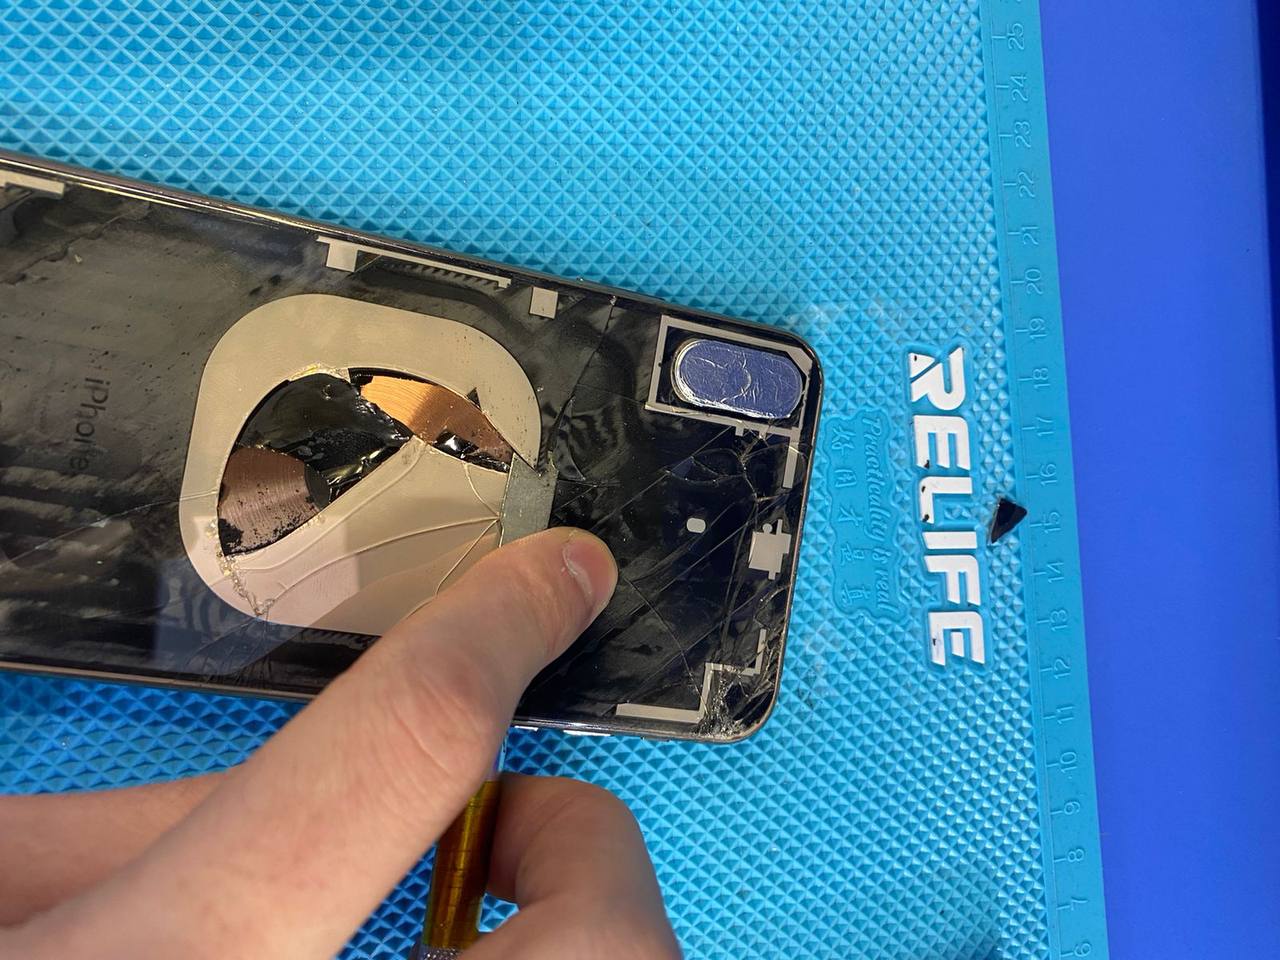 Теперь мы можем удалить остатки старого стекла и очистить корпус iPhone XS Max